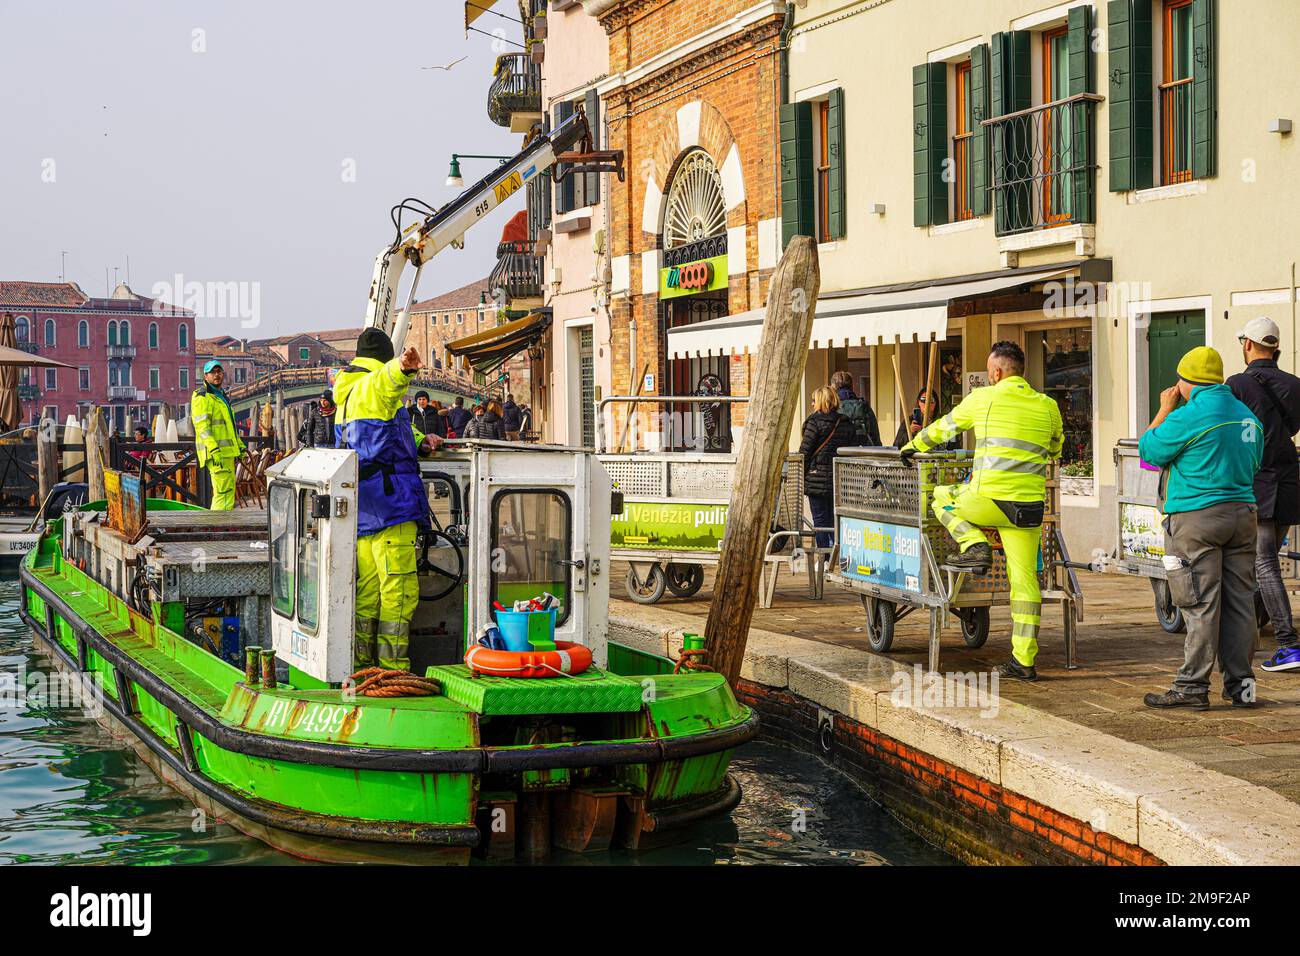 Una nave di rifiuti si ferma in un canale. Gli uomini in giacche gialle spingono i contenitori con i rifiuti alla nave, aspettano finché la gru della nave li porta sulla nave. Foto Stock